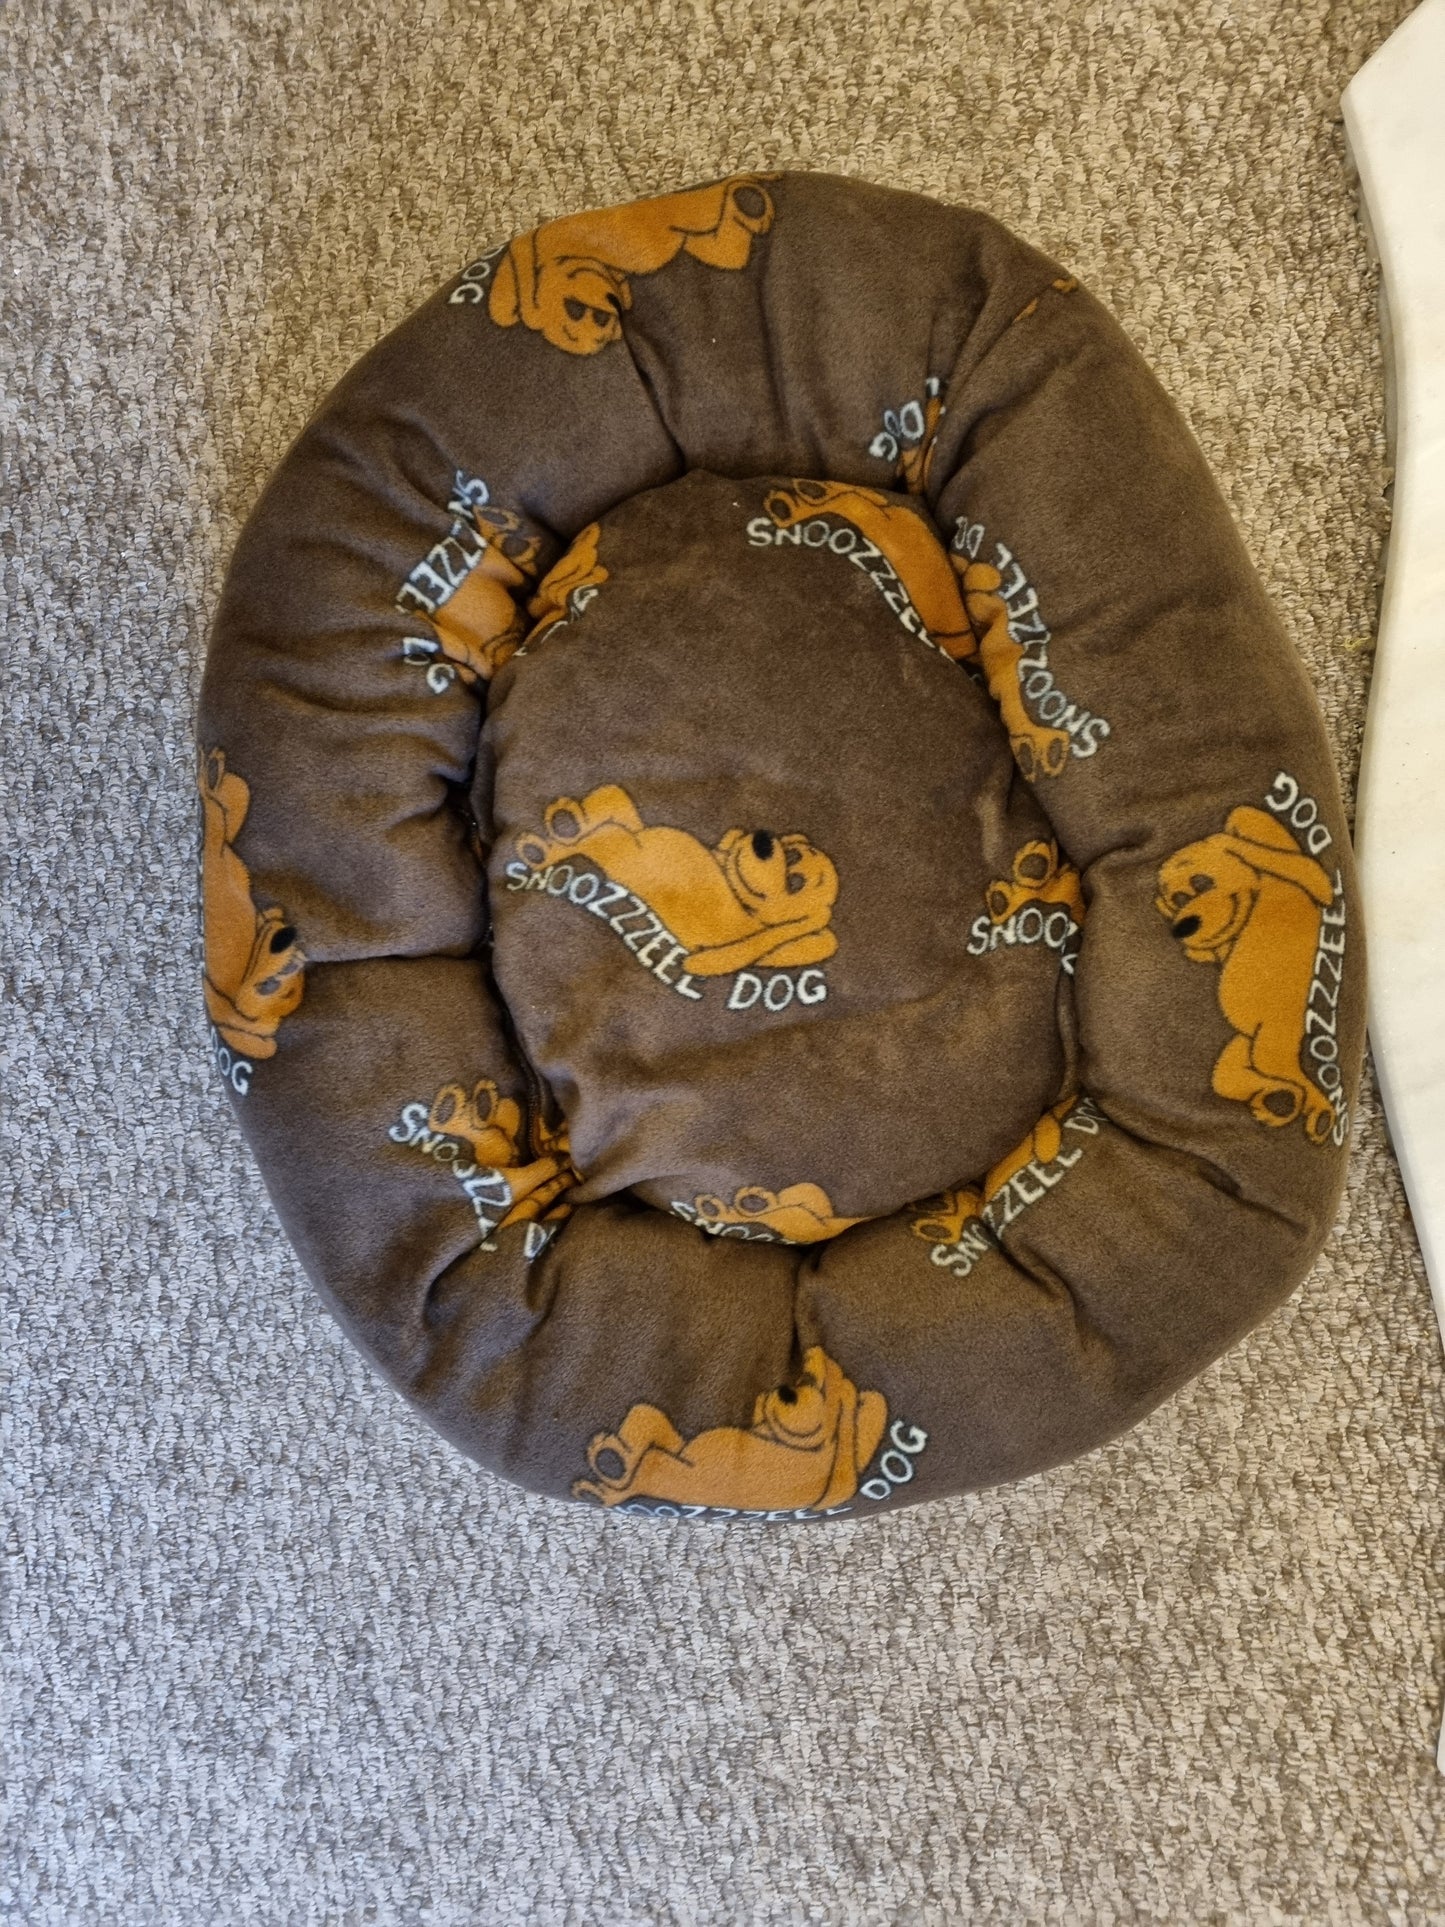 Snoozzzeee Dog fleece Donut Pet Bed